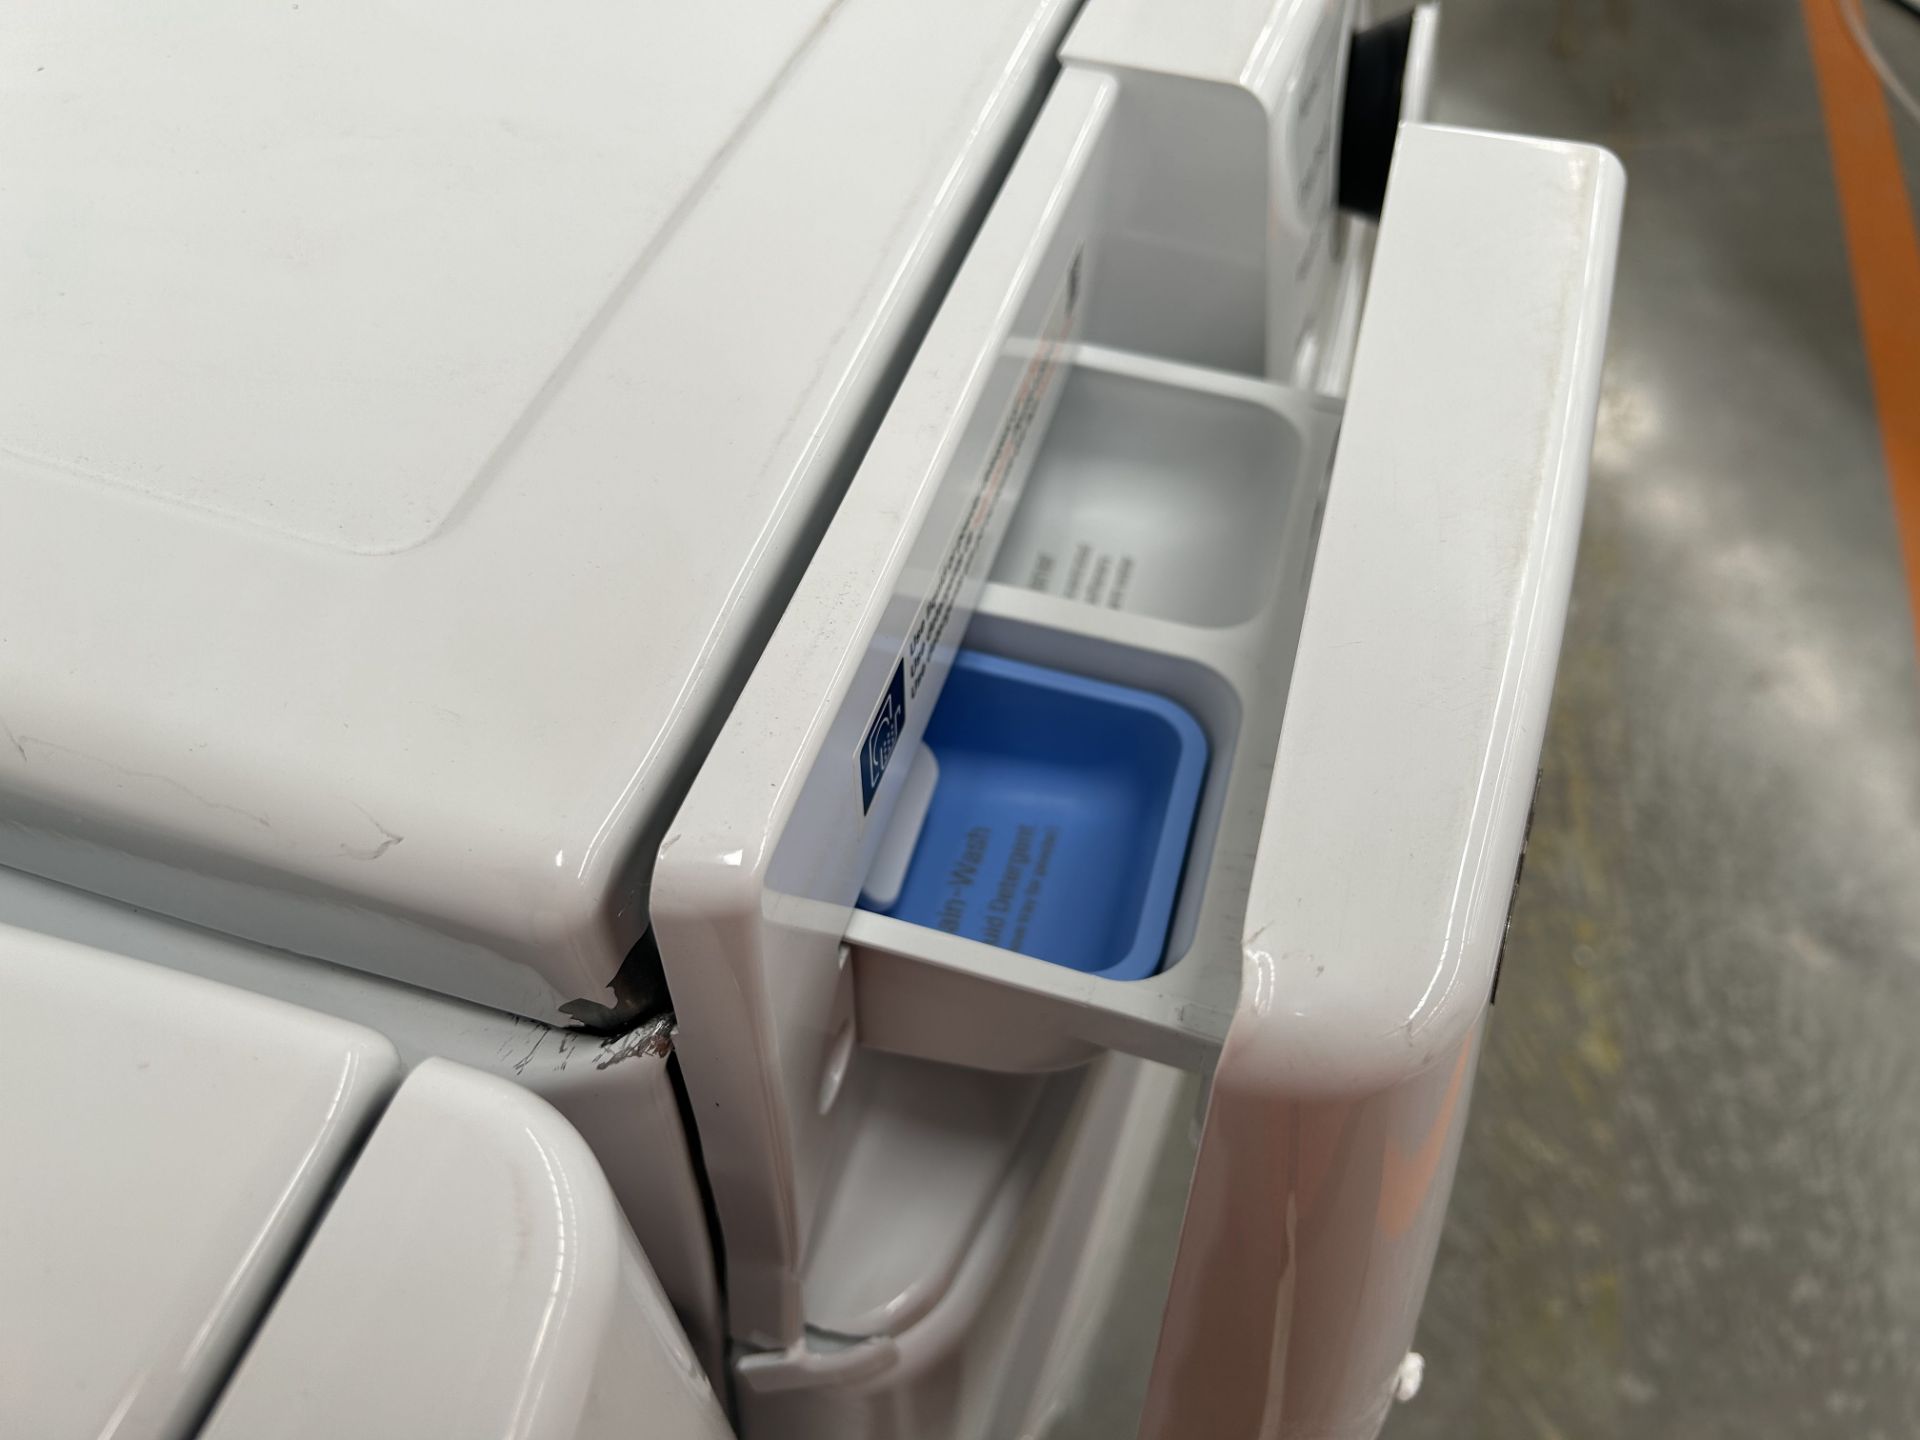 Combo lavadora y Secadora contiene: 1 Lavadora de 20 KG Marca LG, Modelo WM202V26W, Serie 0X531, Co - Image 7 of 8